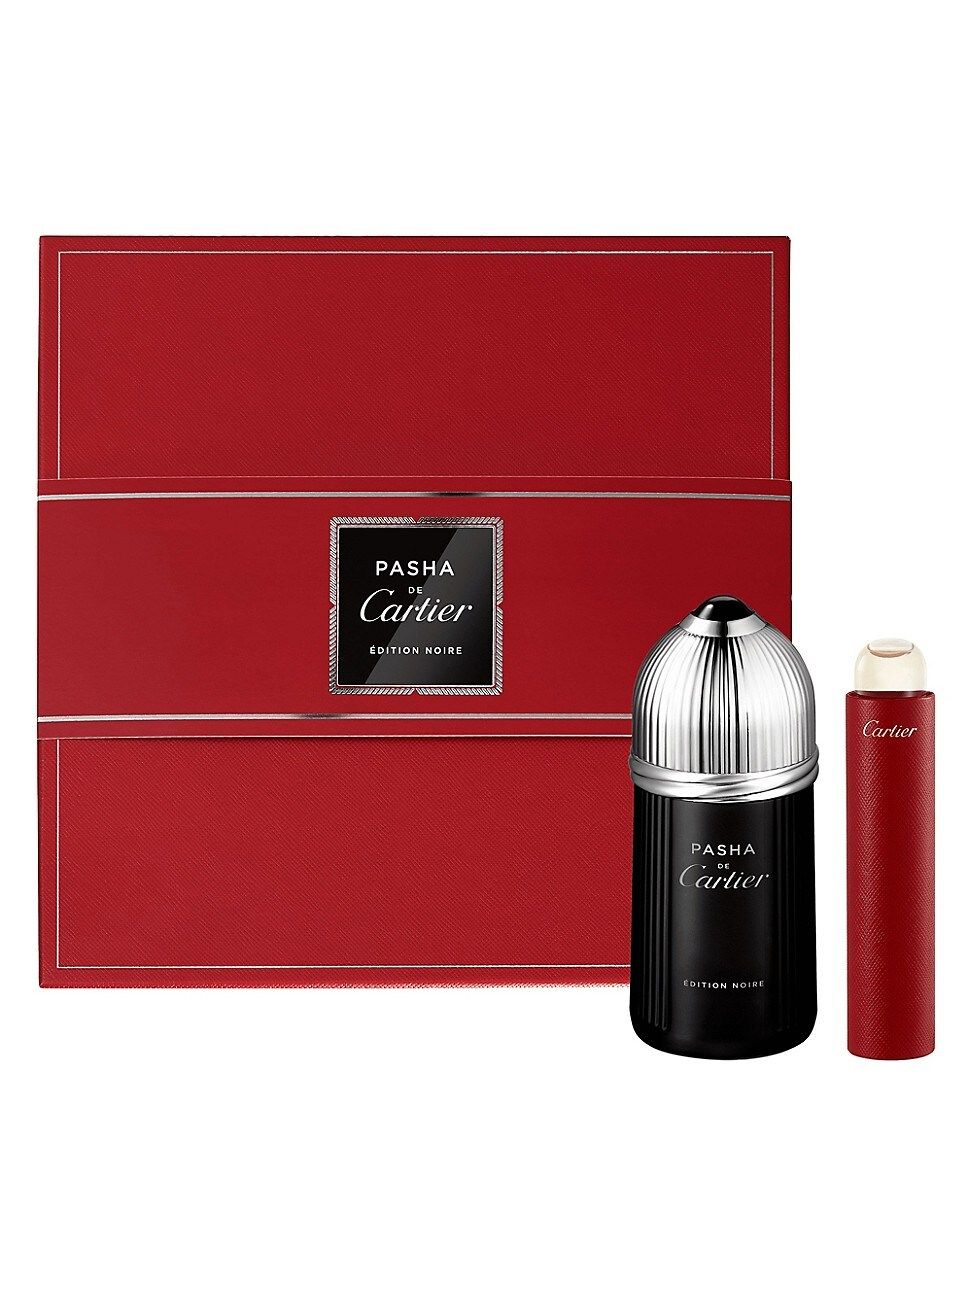 Cartier Women's Pasha Edition Noire Eau de Parfum 2-Piece Set - $128.50 Value | Saks Fifth Avenue